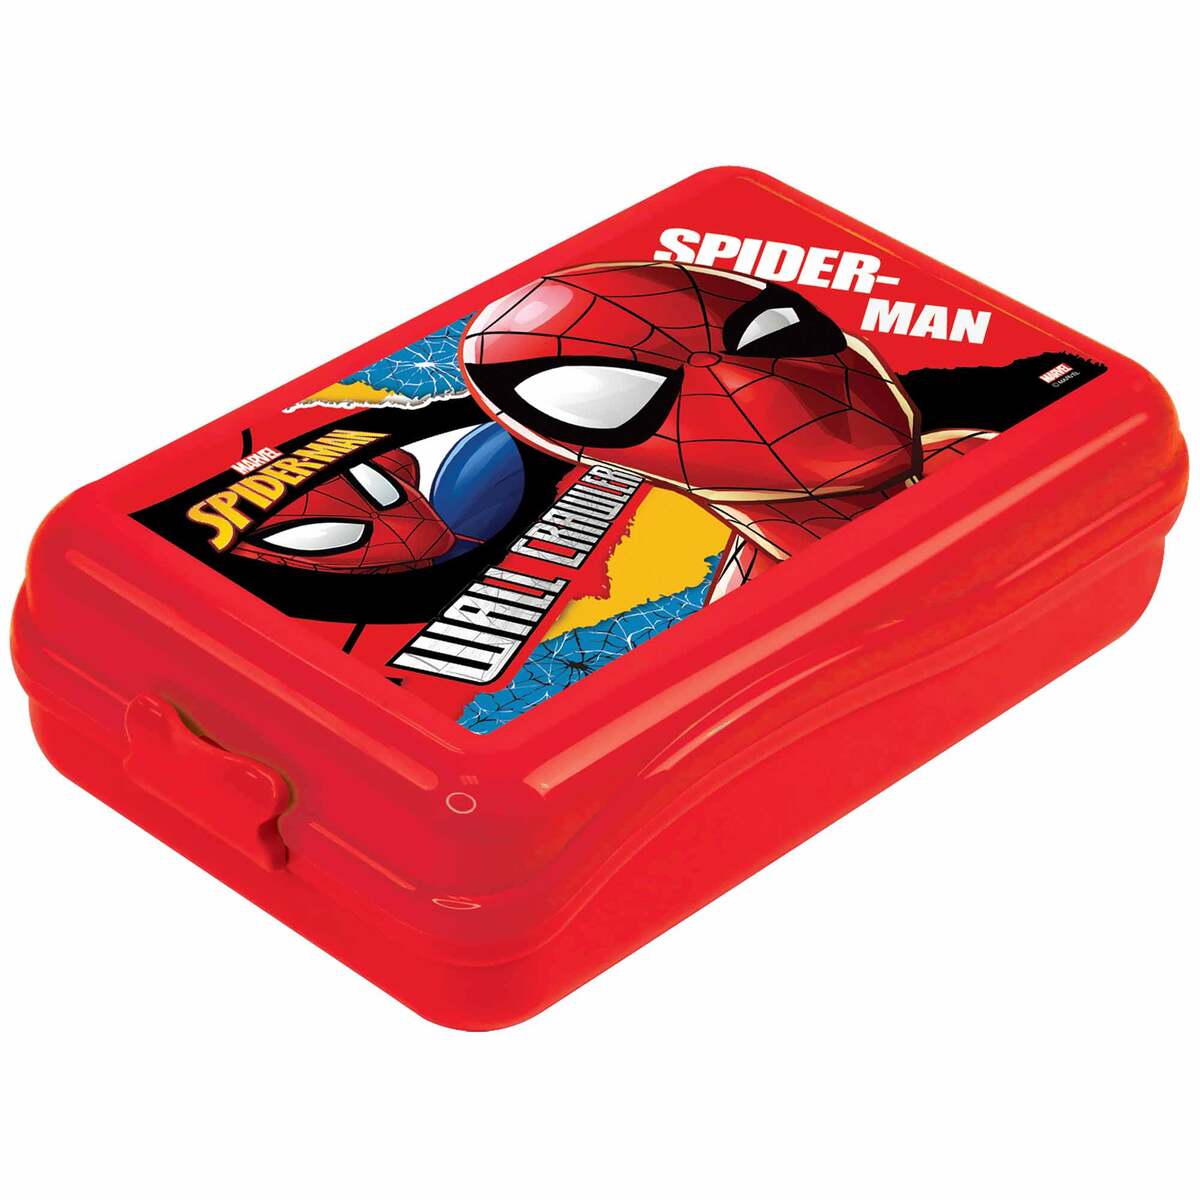 Spider Man Snack Box 112-62-13